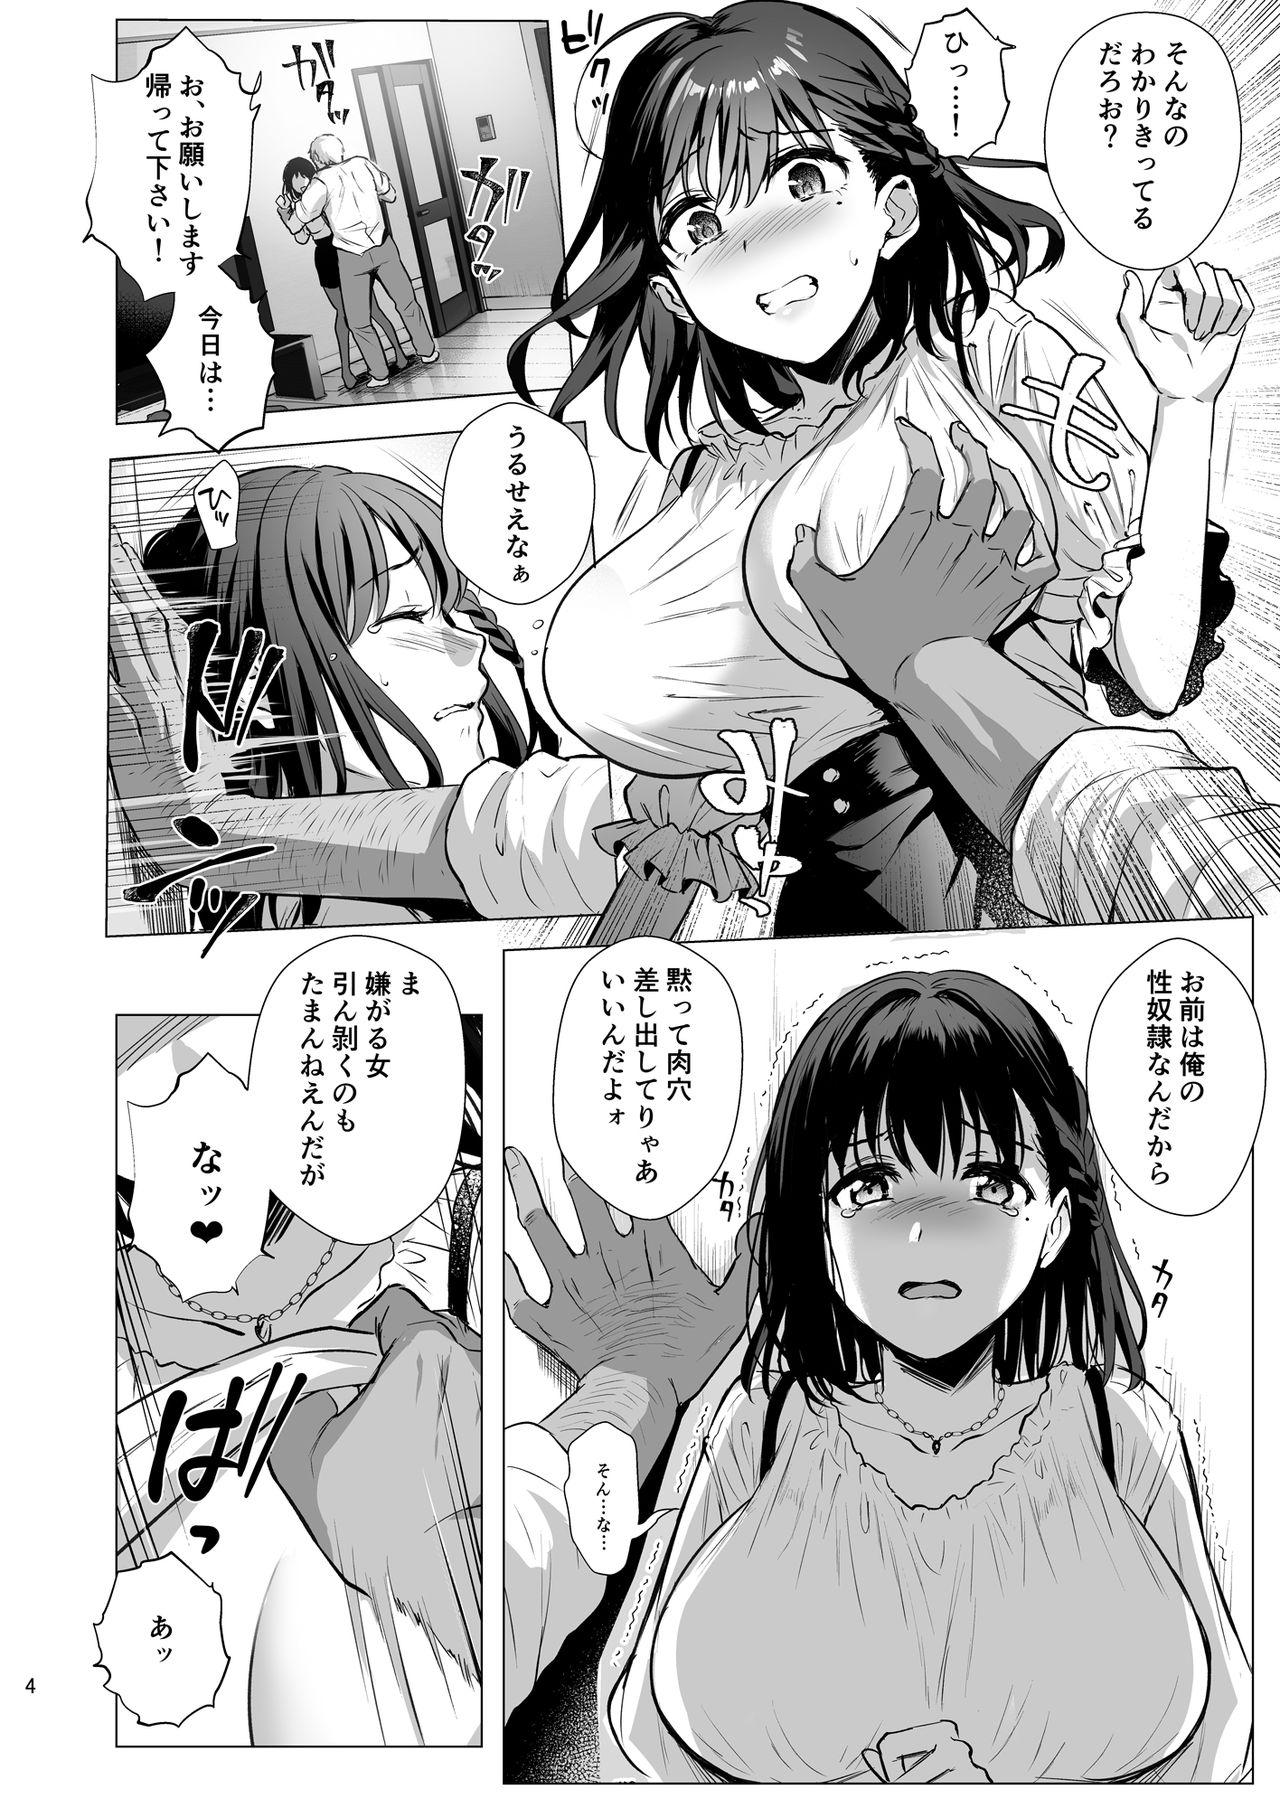 Dildos Toshoshitsu no Kanojo 3 - Original Gaypawn - Page 5